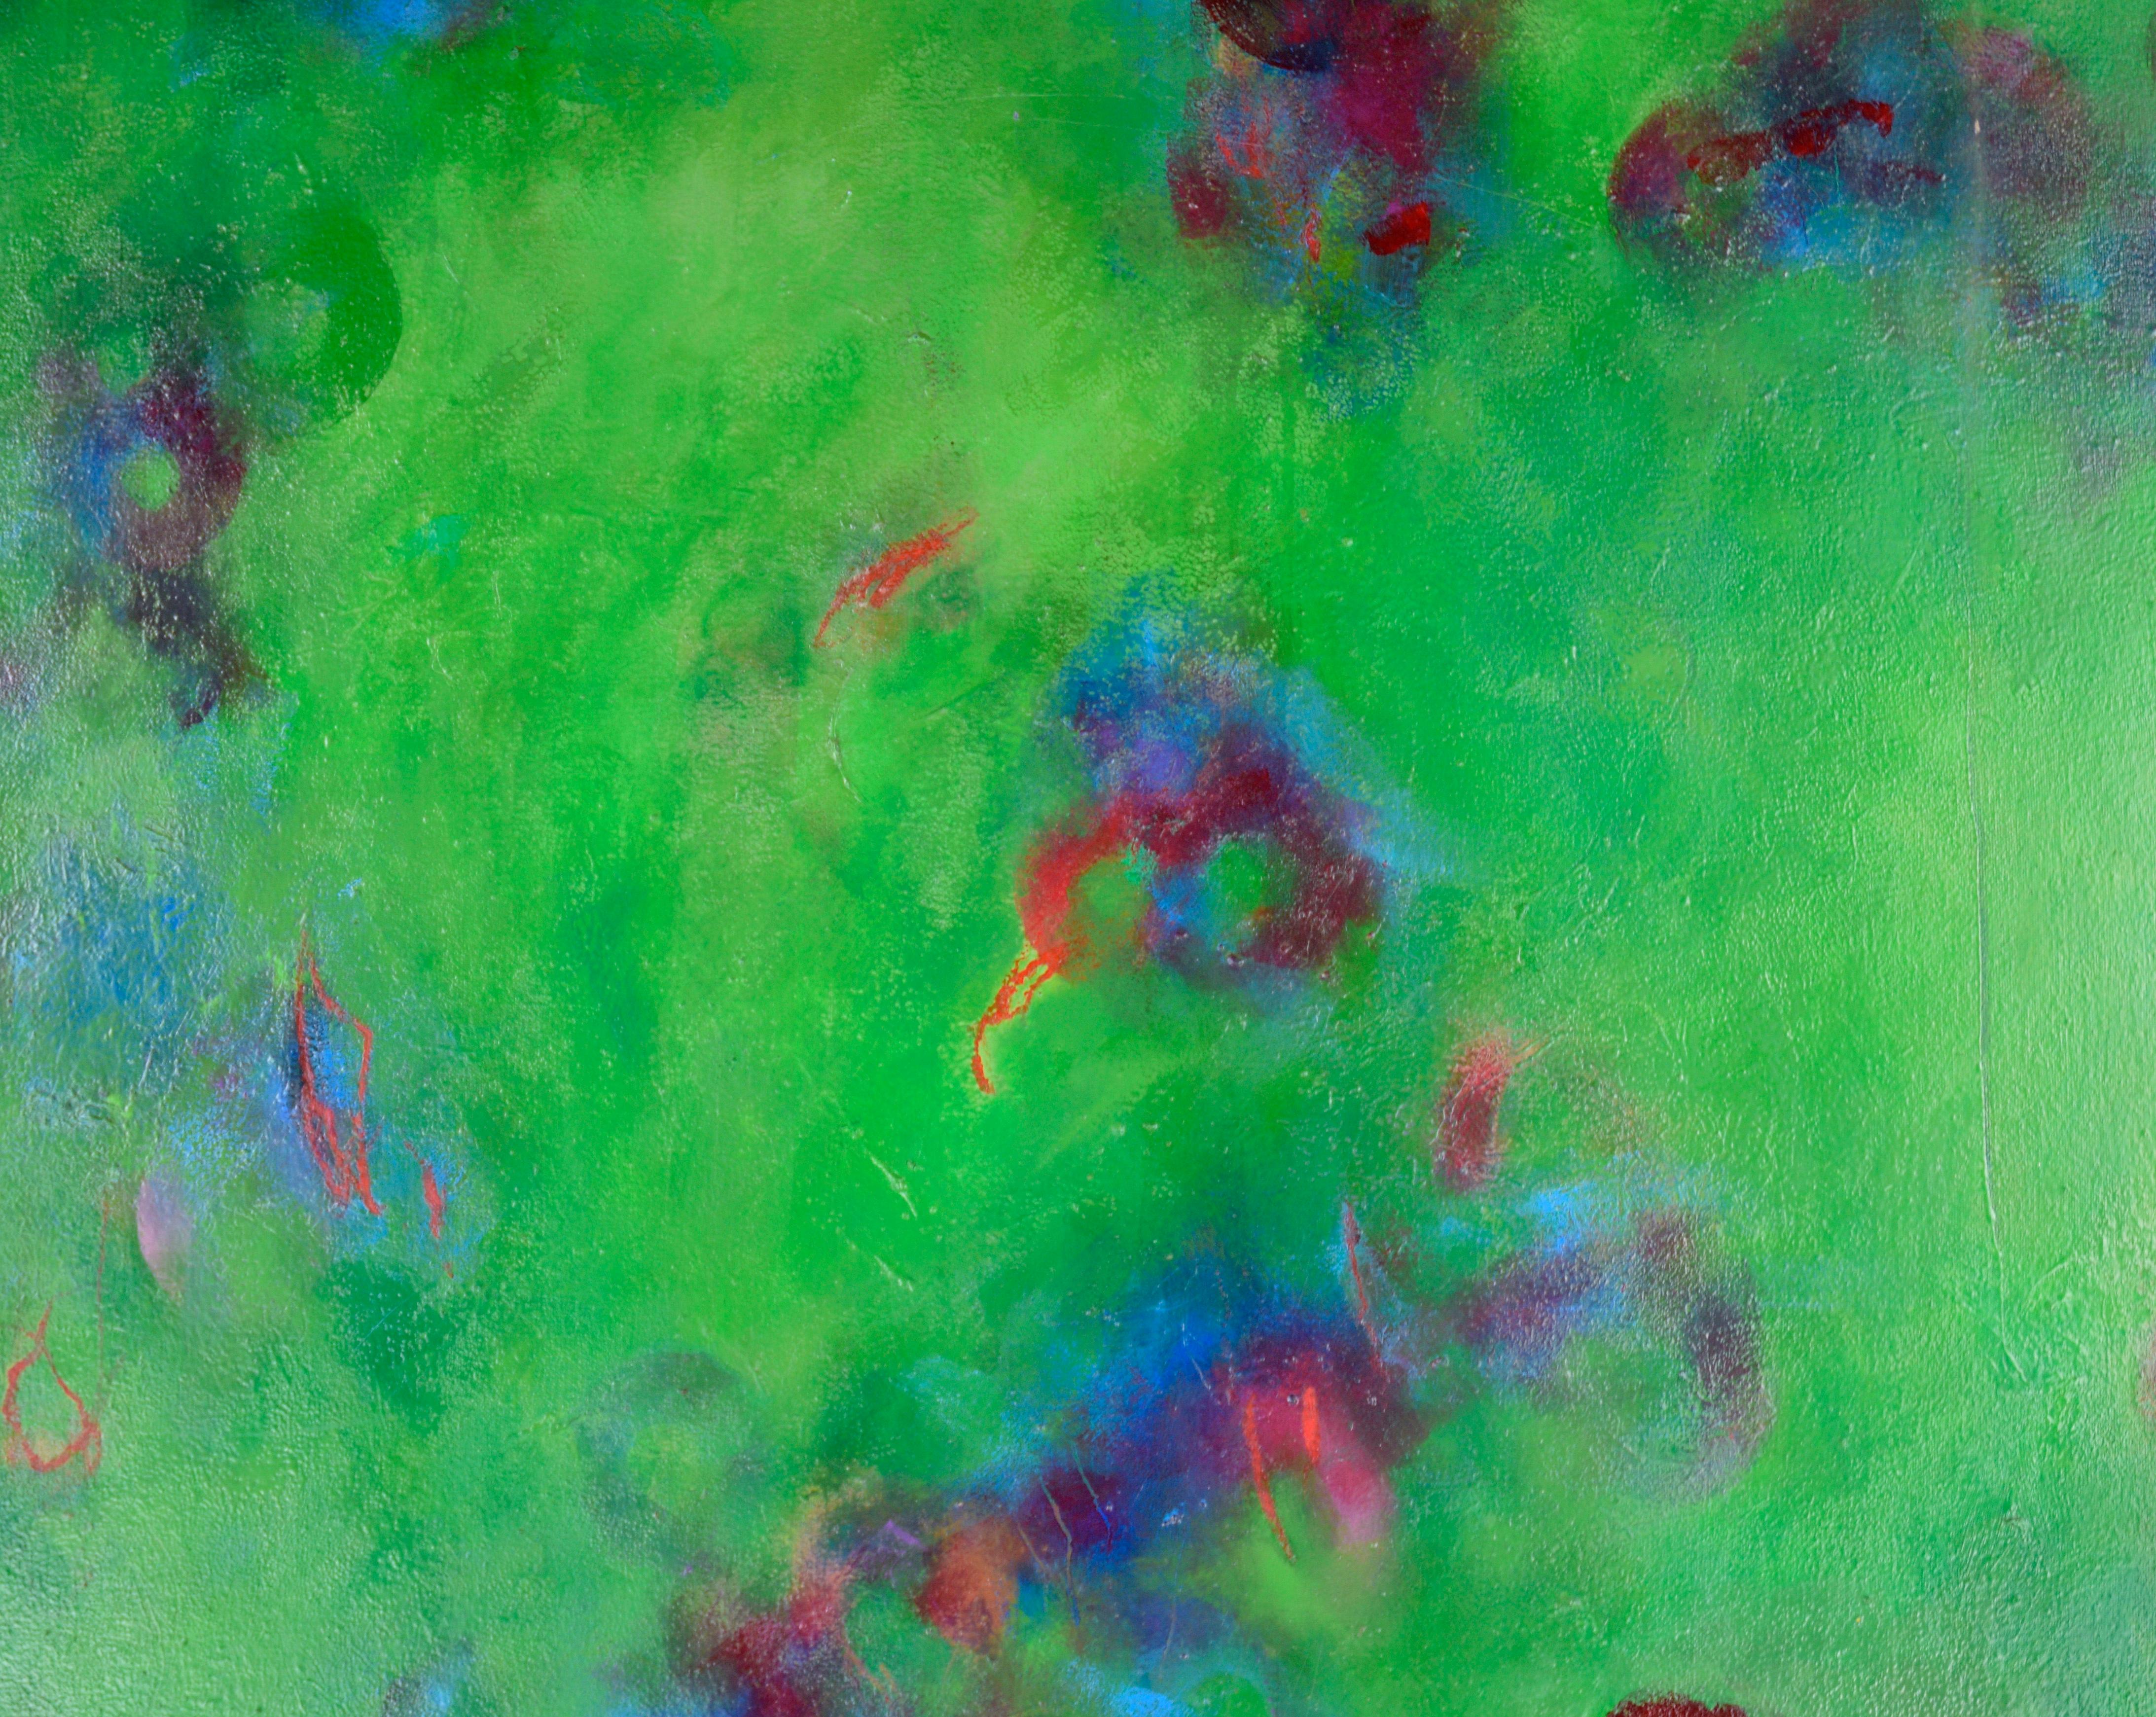 Große abstrakt-expressionistische Komposition „Green Punctuation“

Helle und gesättigte abstrakte Komposition der kalifornischen Künstlerin Linda Symonds (Amerikanerin, 20. Jahrhundert). Auf einem Feld aus Grün und Blau finden sich rote und